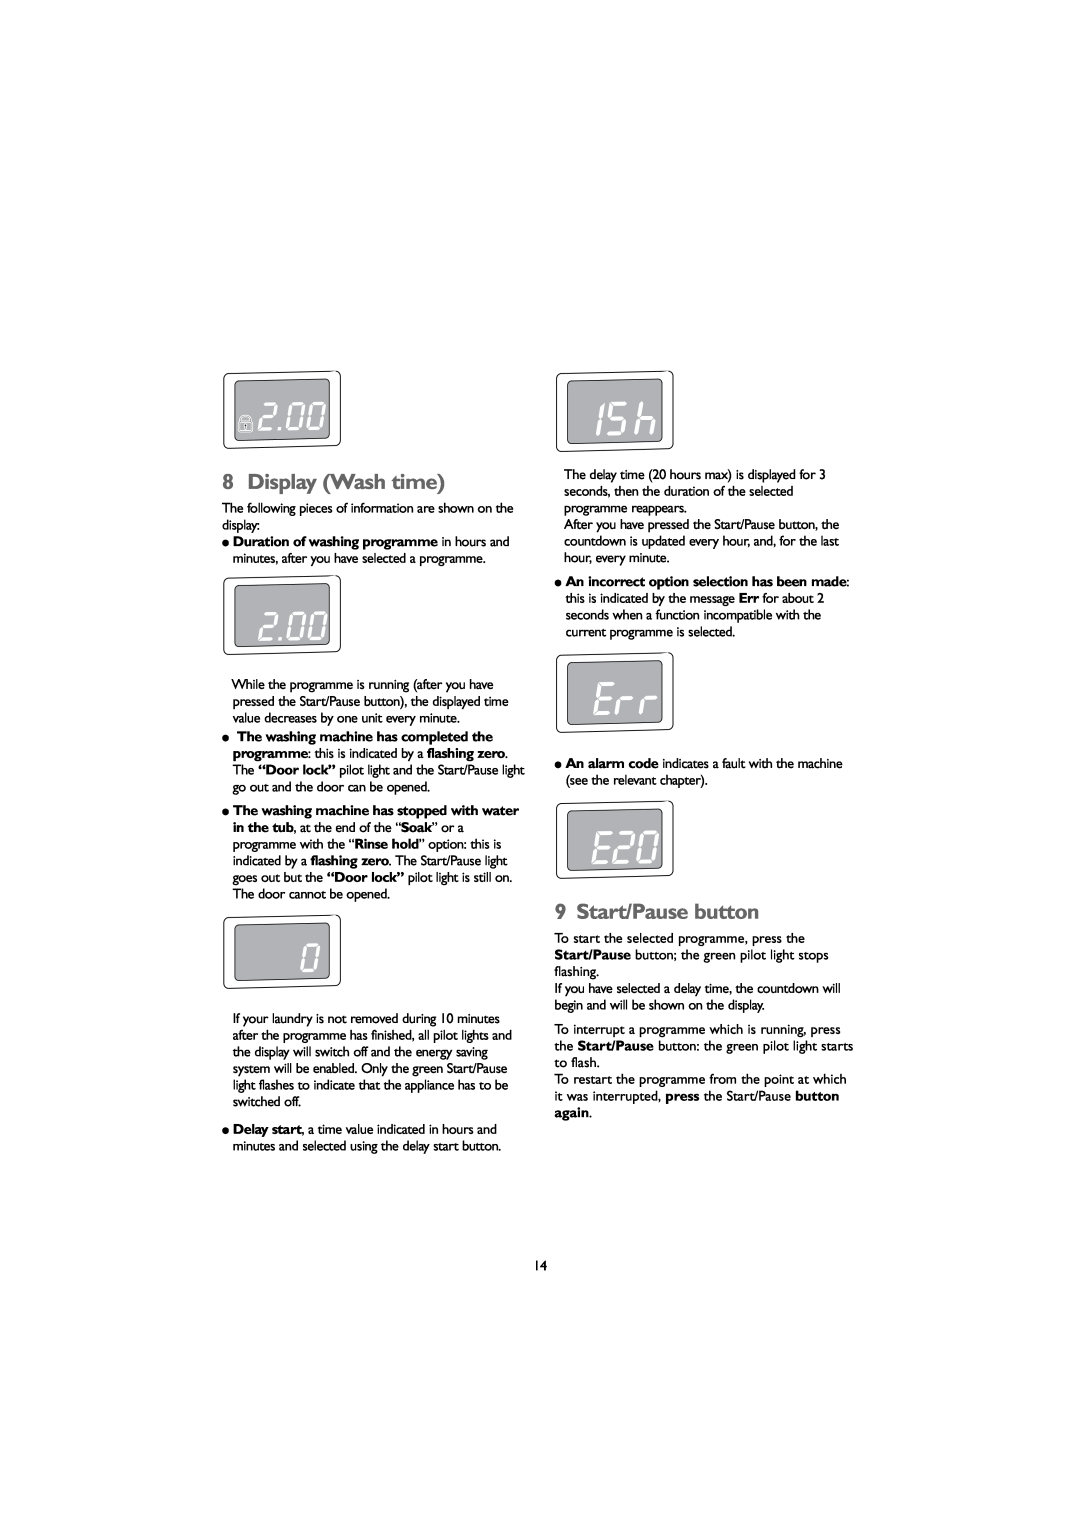 John Lewis JLWM 1203 instruction manual 2.00, Display Wash time, Start/Pause button 